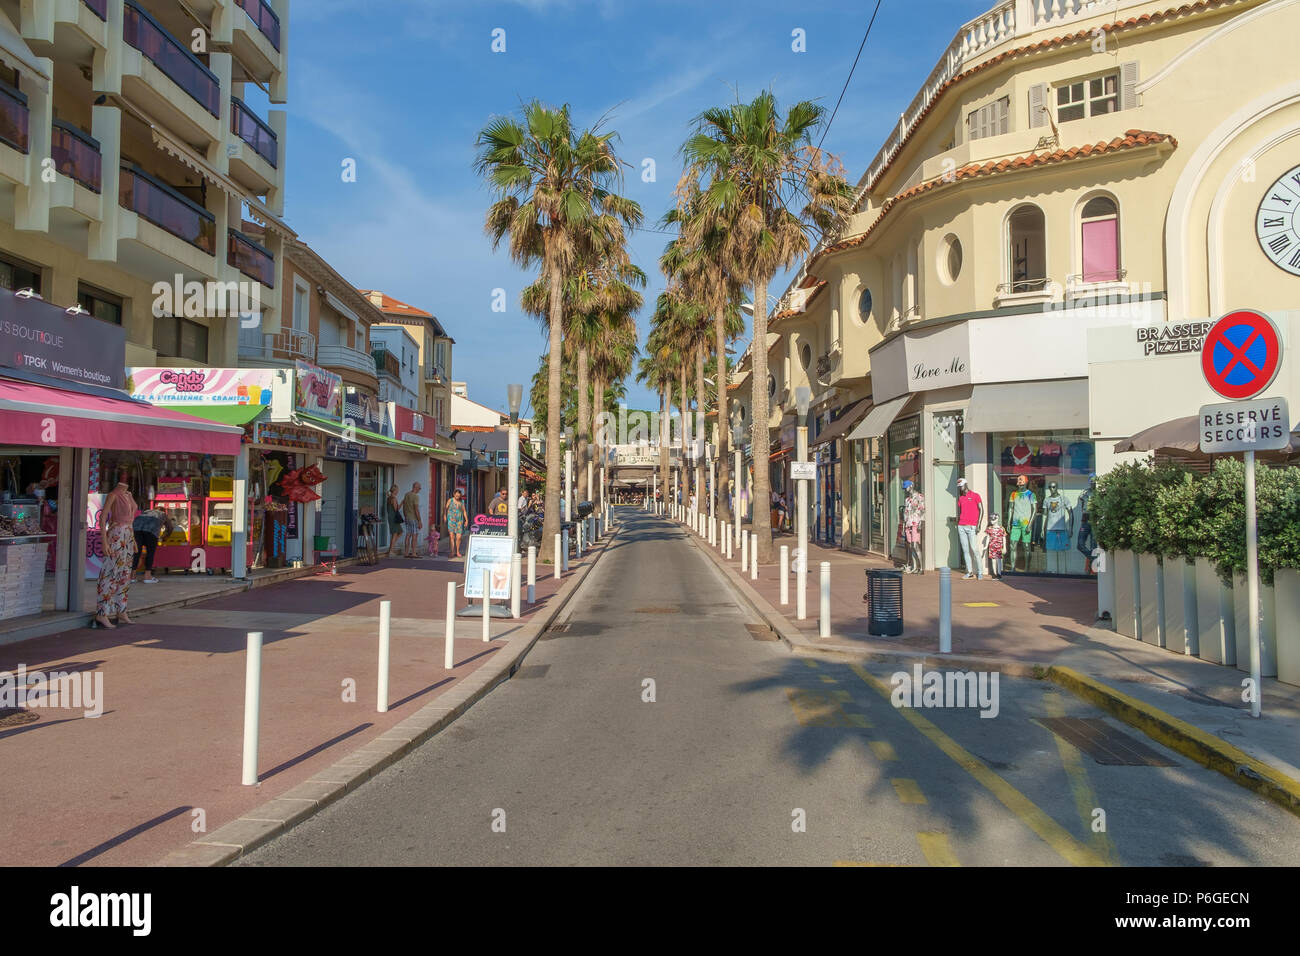 Geschäfte, Restaurants und Palmen entlang der Küste von Juan-les-Pins,  Antibes, Frankreich Stockfotografie - Alamy